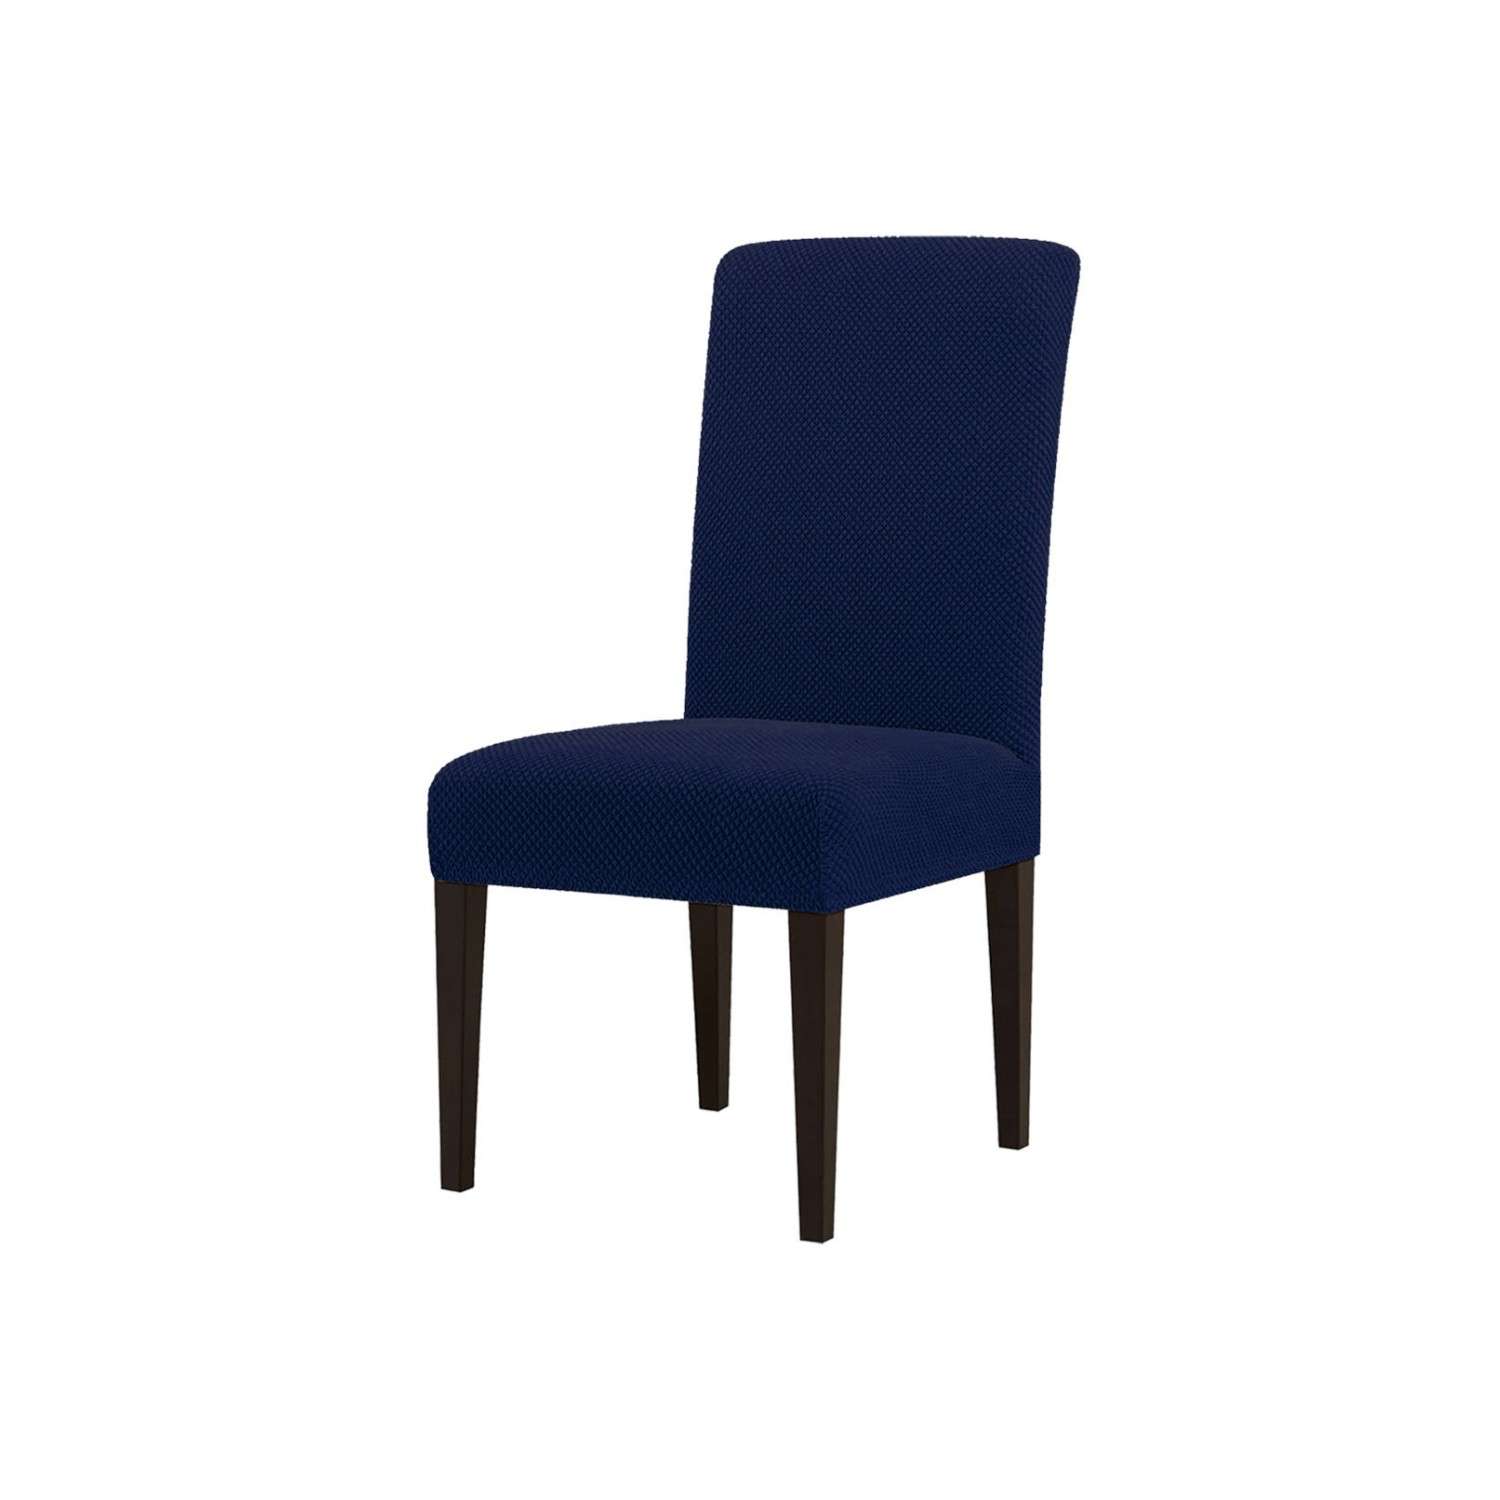 Чехол на стул LuxAlto Коллекция Fukra oval Темно-синий - фото 1